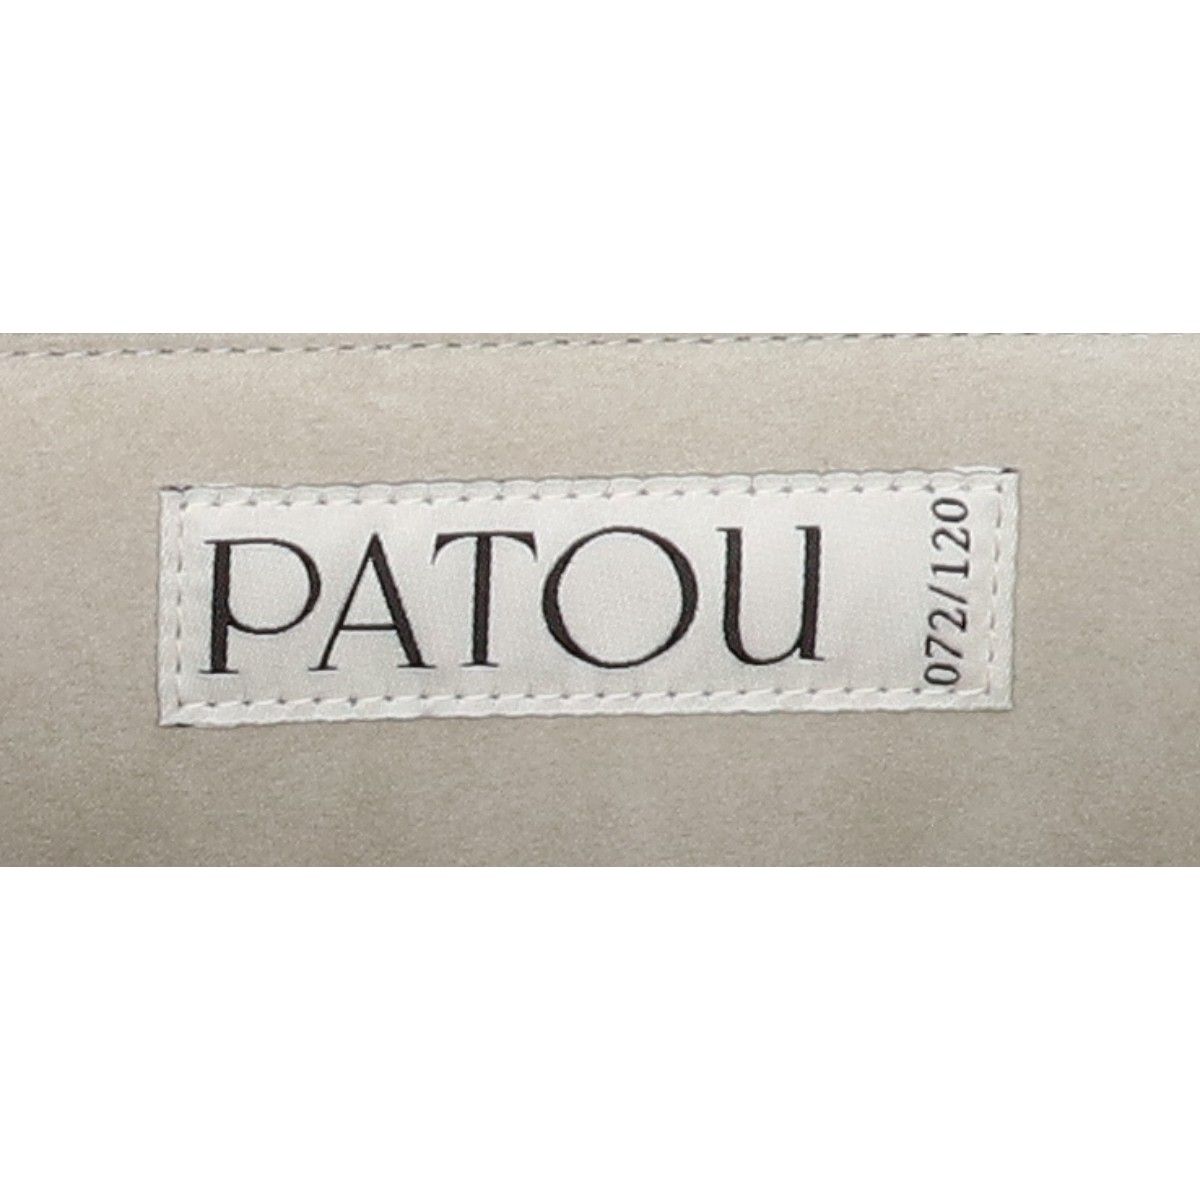 PATOU パトゥ BA0015000900B Le Patou カーフレザー - ユーズド